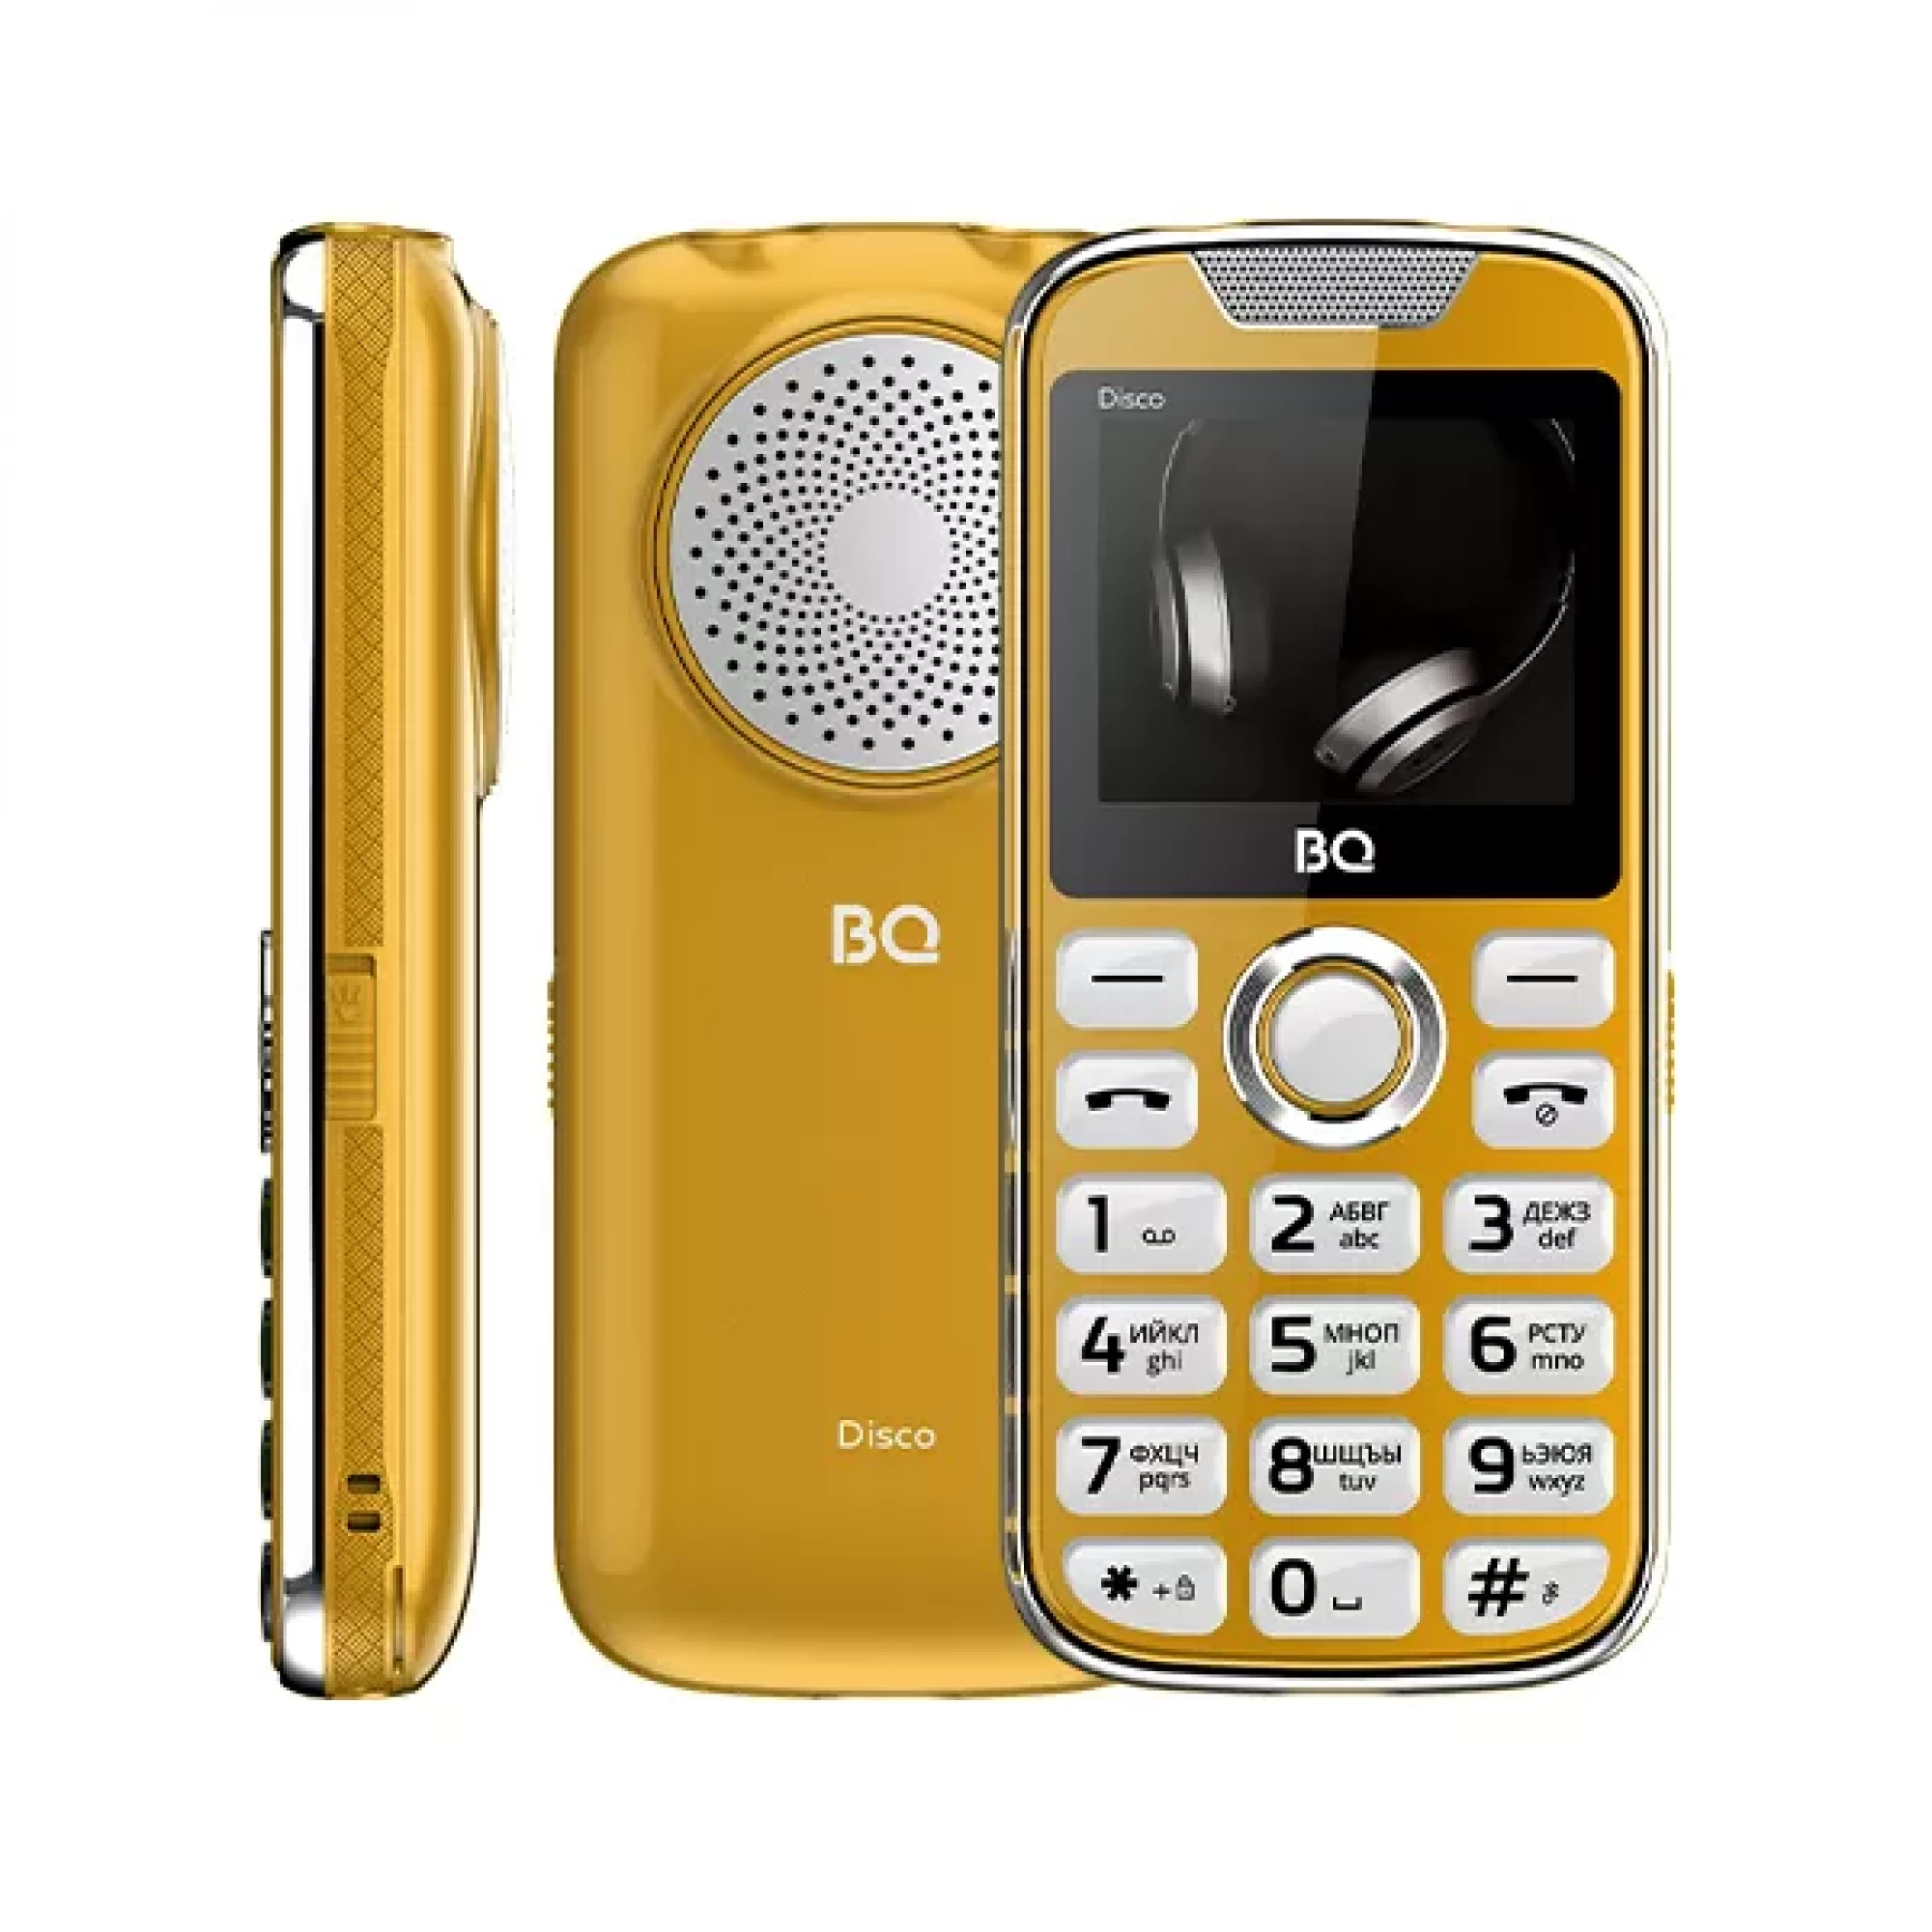 Мобильный телефон BQ BQ-2005 Disco (золотой)